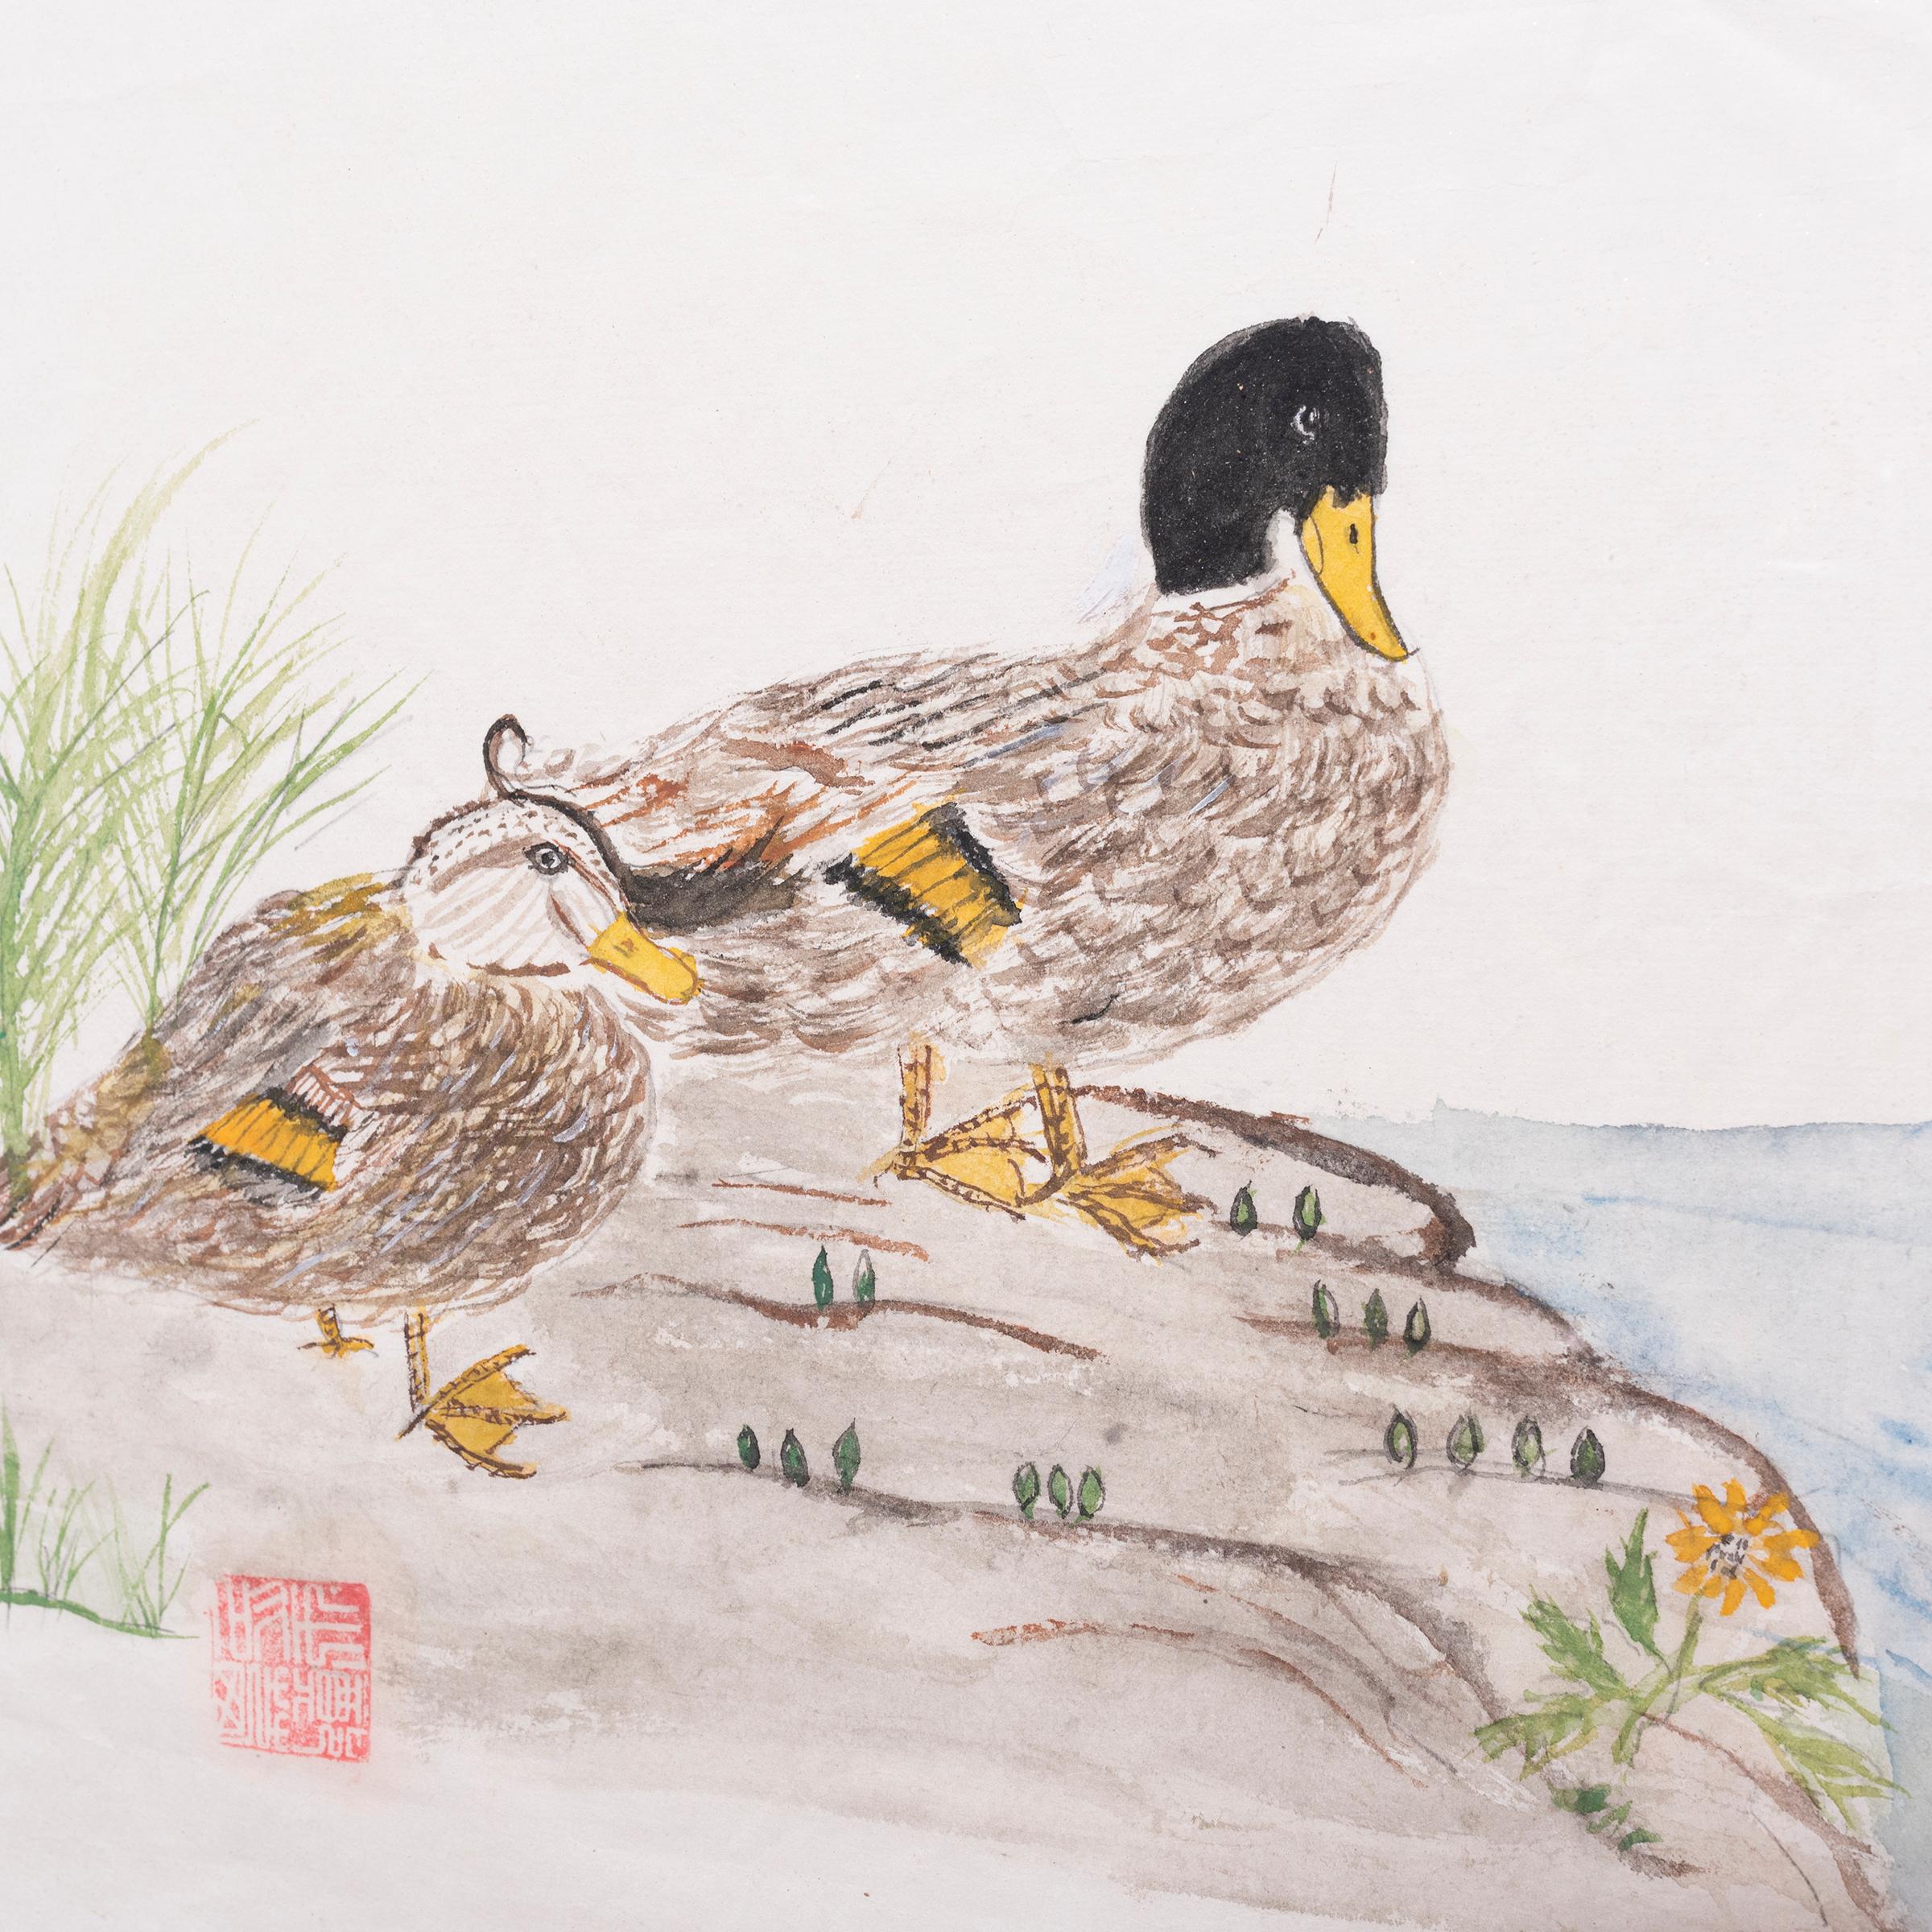 Cette charmante aquarelle, composée dans le style de la calligraphie traditionnelle à l'encre, représente deux canards se reposant au bord d'une rivière. Des herbes hautes et des pousses feuillues parsèment le terrain rocheux et les eaux calmes